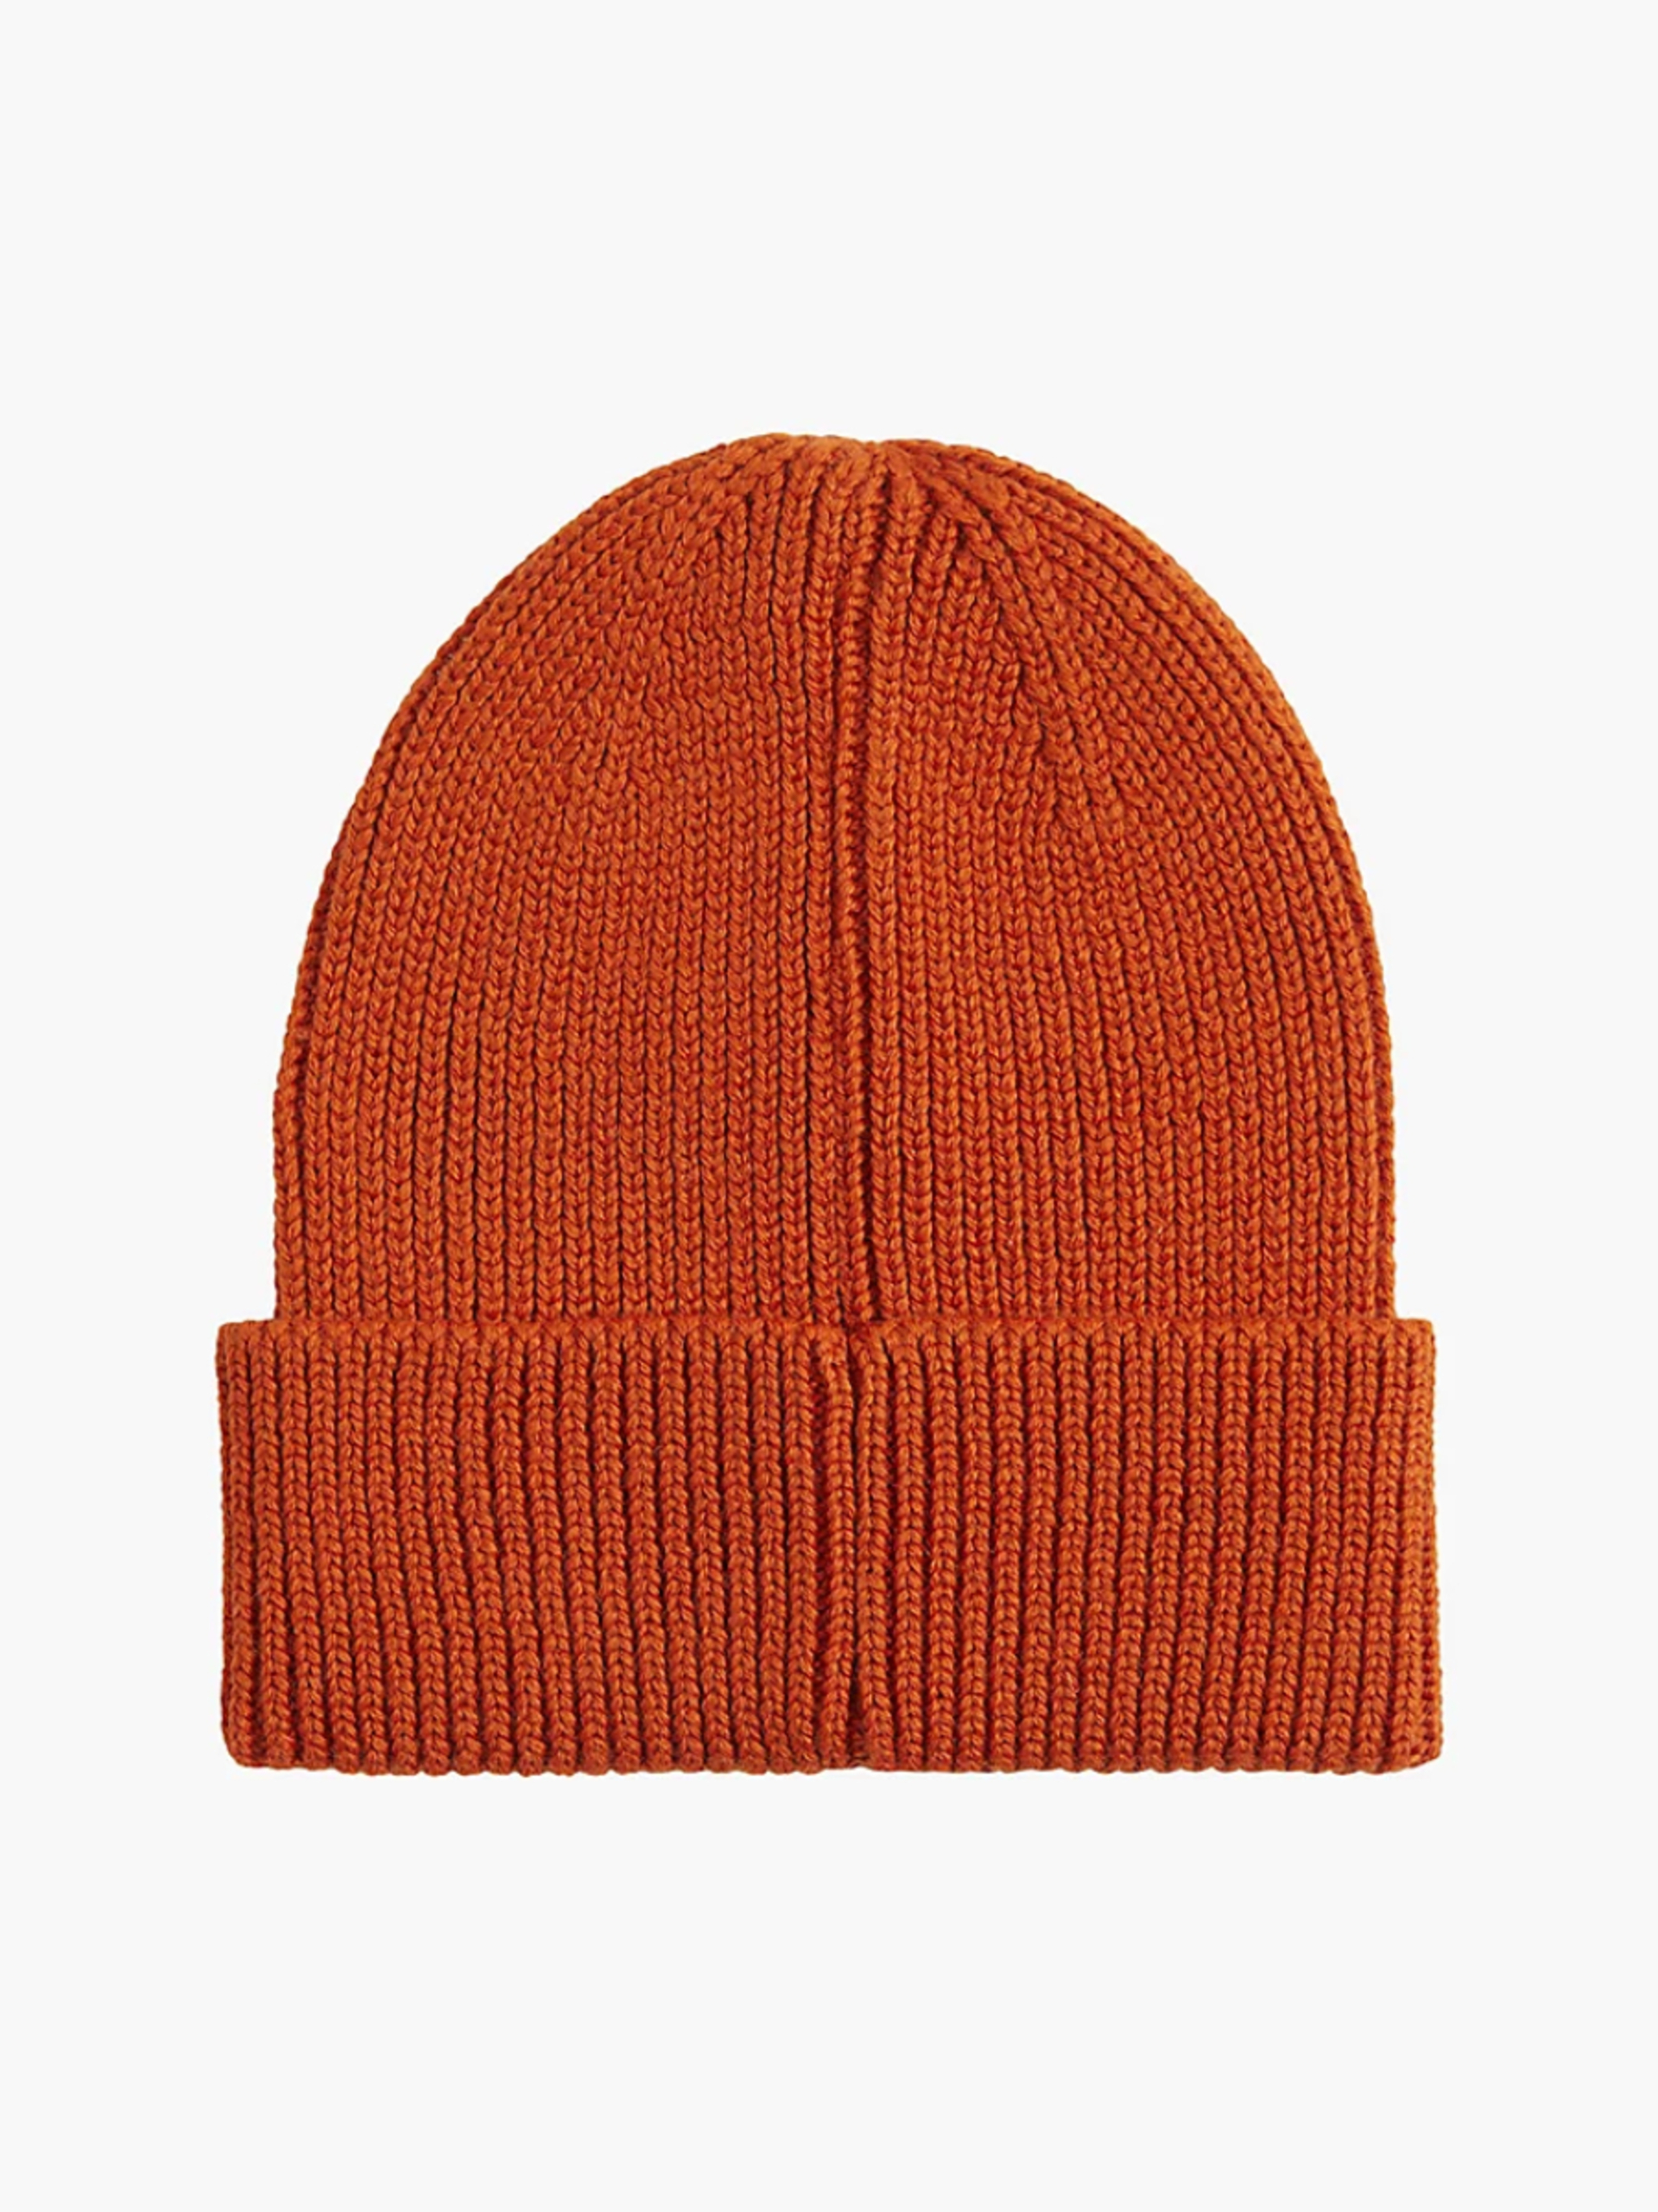 Calvin Klein pánská oranžová čepice - OS (S04)